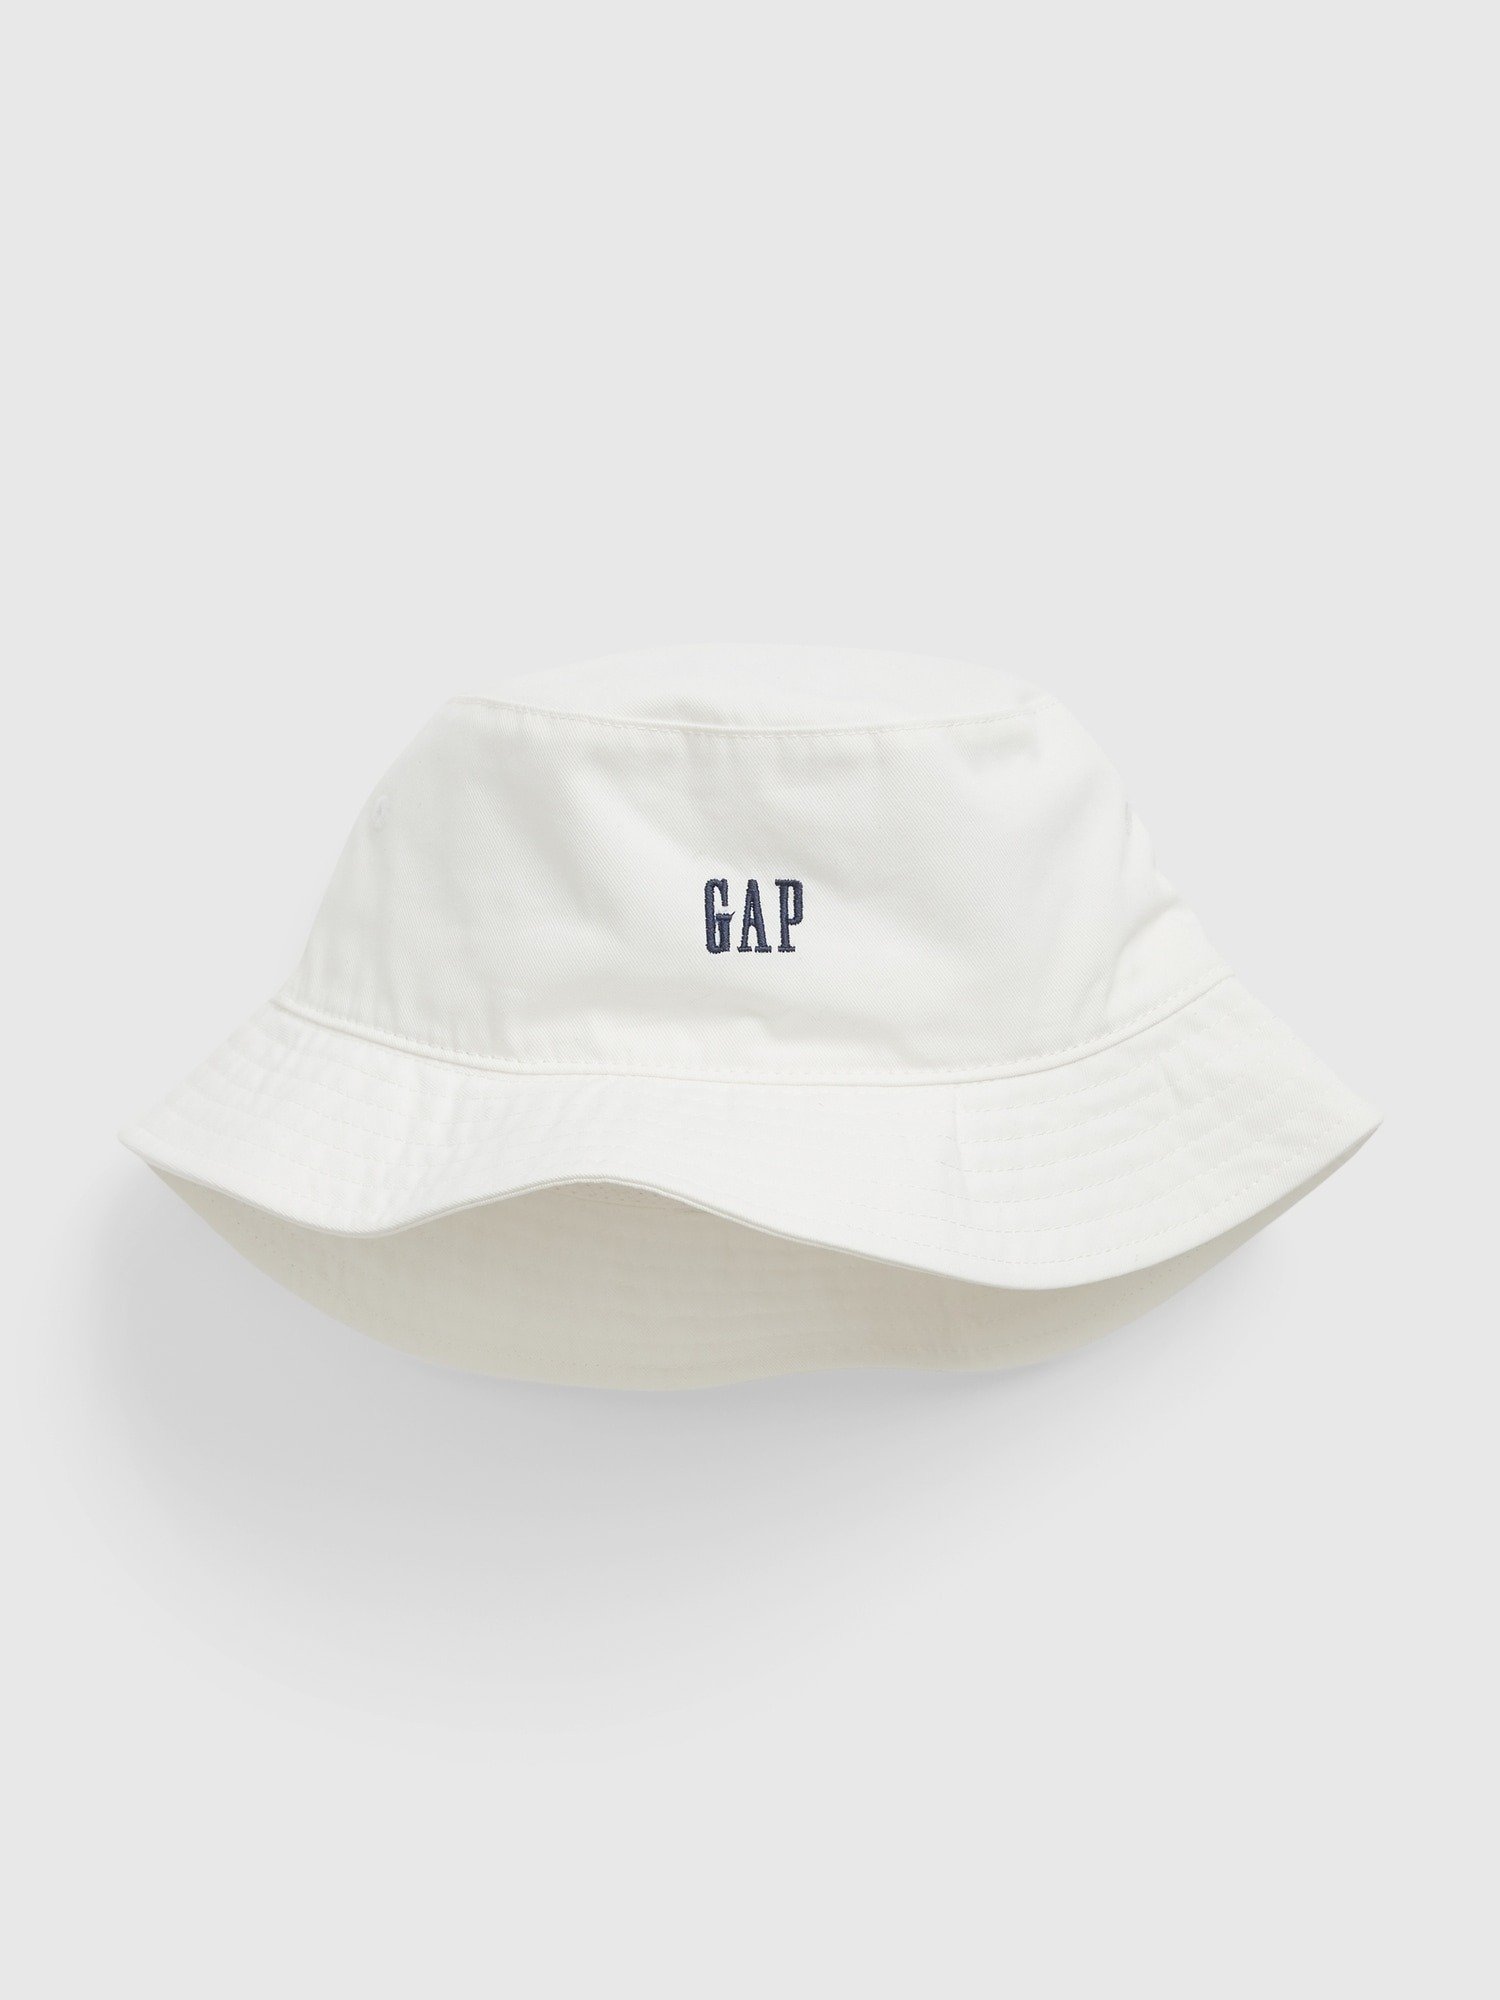 Gap Logo Balıkçı Şapka product image